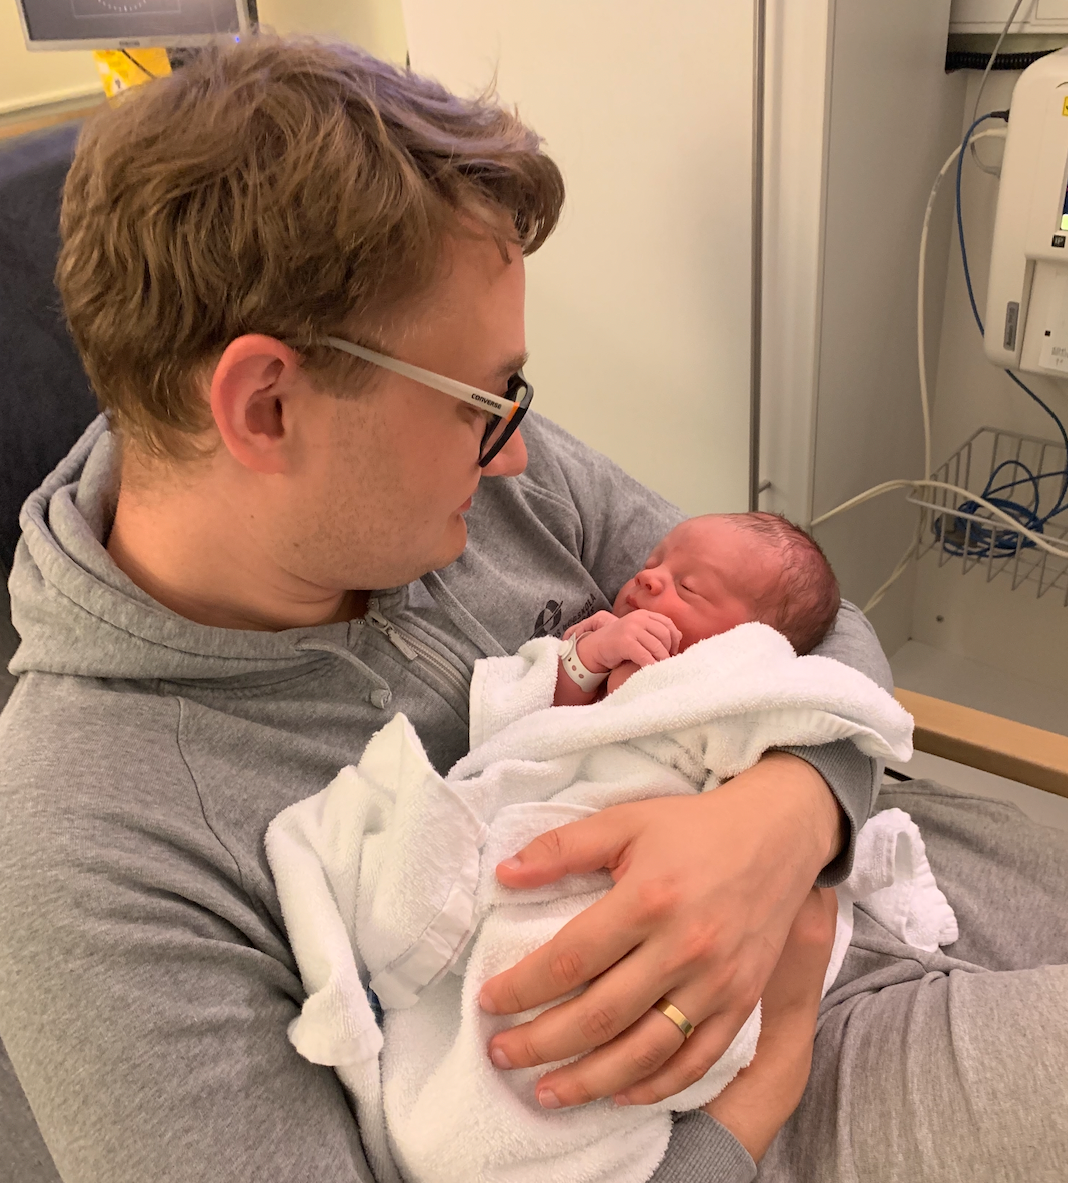 Den 7 juli 2020 föddes deras son Lukas: ”Erik var den stoltaste pappan man kan tänka sig, han var så glad över sitt lilla barn”.